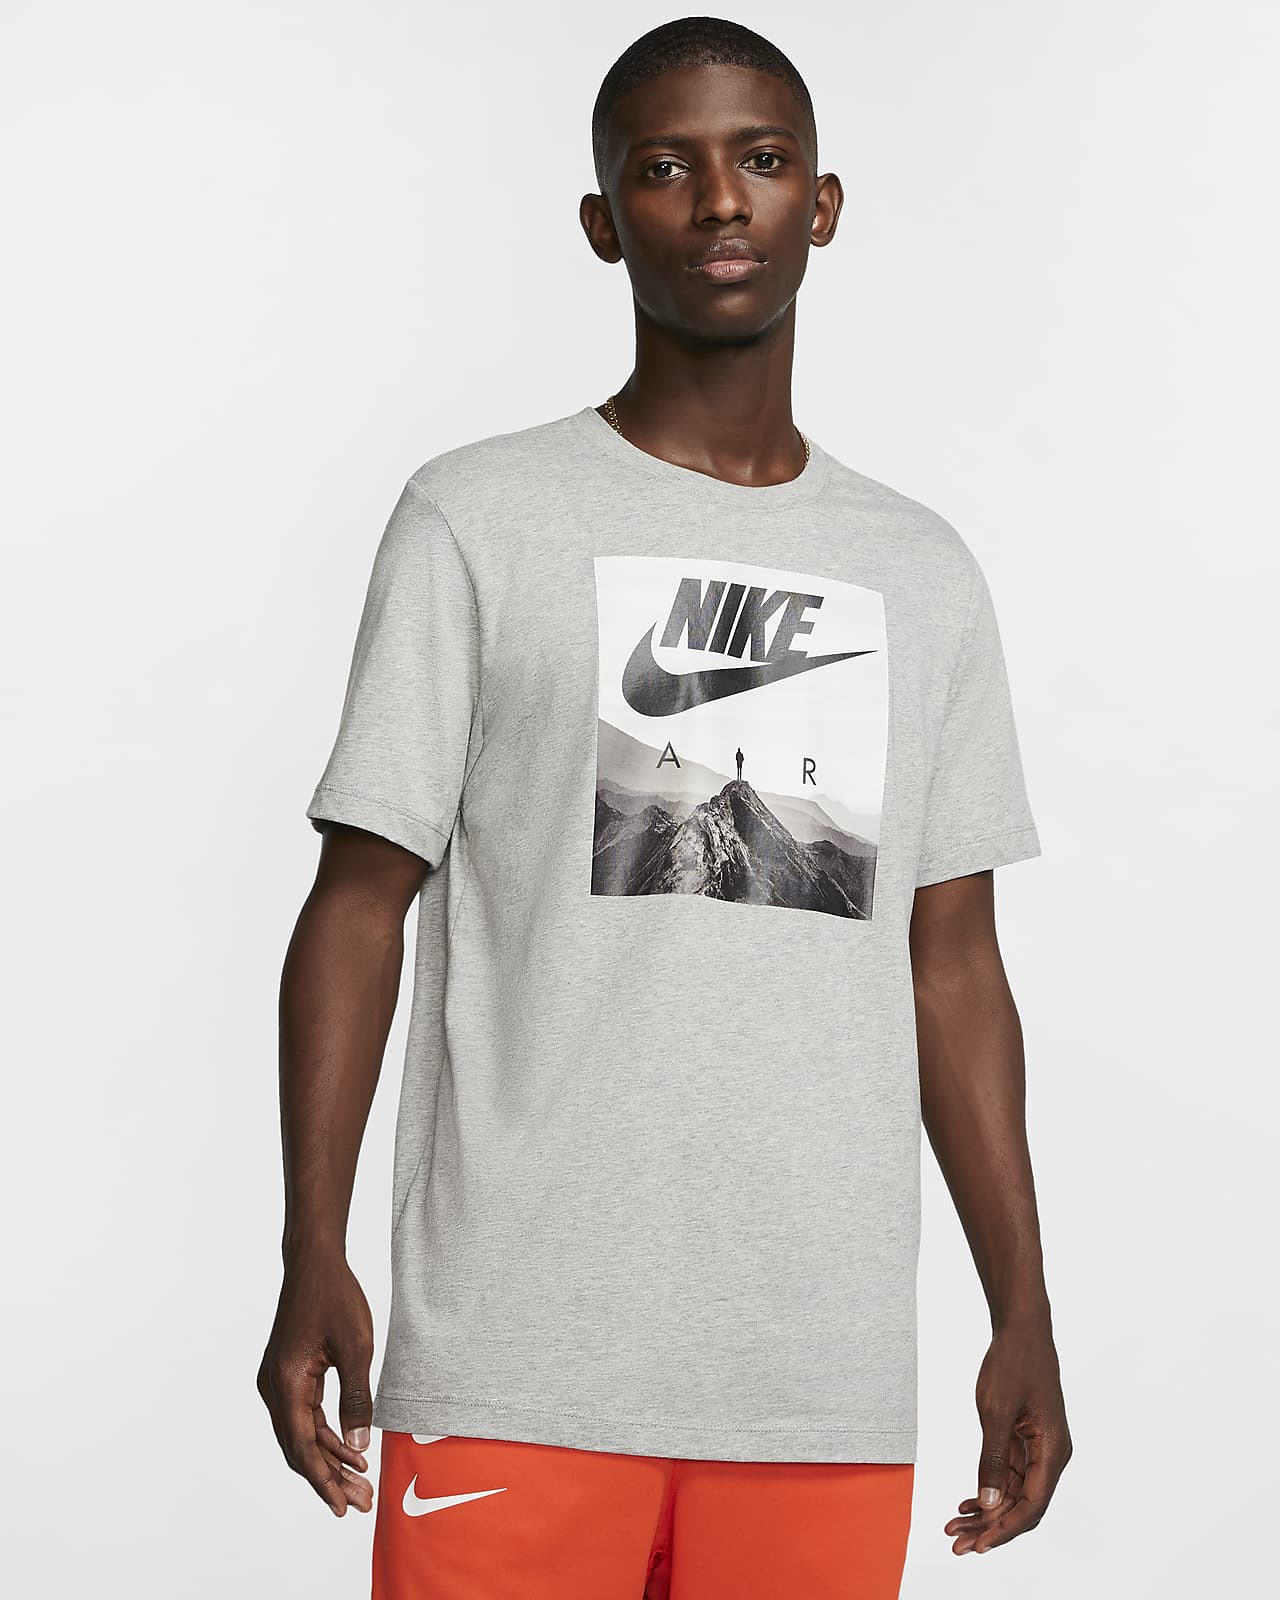 Nike Air Men's T-Shirt. Nike JP